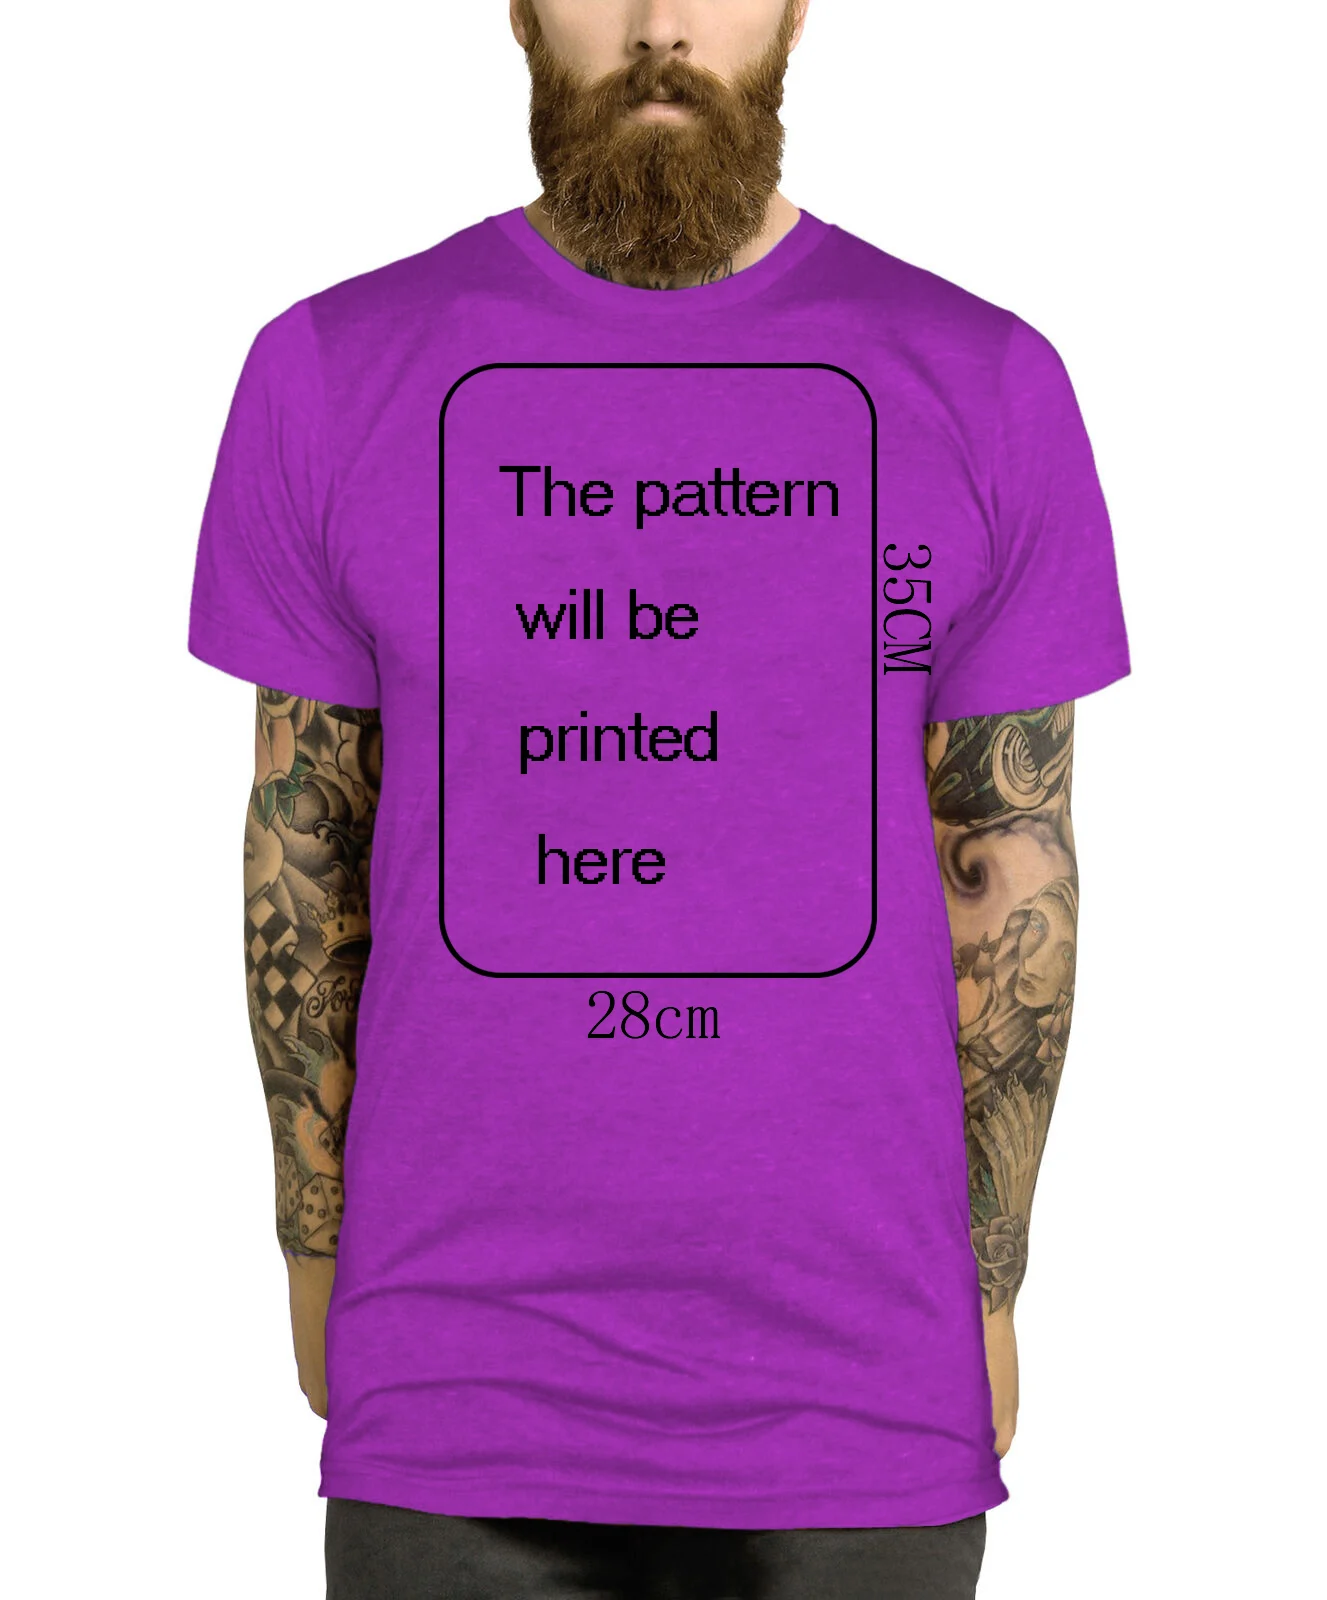 Футболка со звуком смерти упорства, размеры s, m, l, xl, XXL, футболка с надписью "Death Metal" - Цвет: Фиолетовый